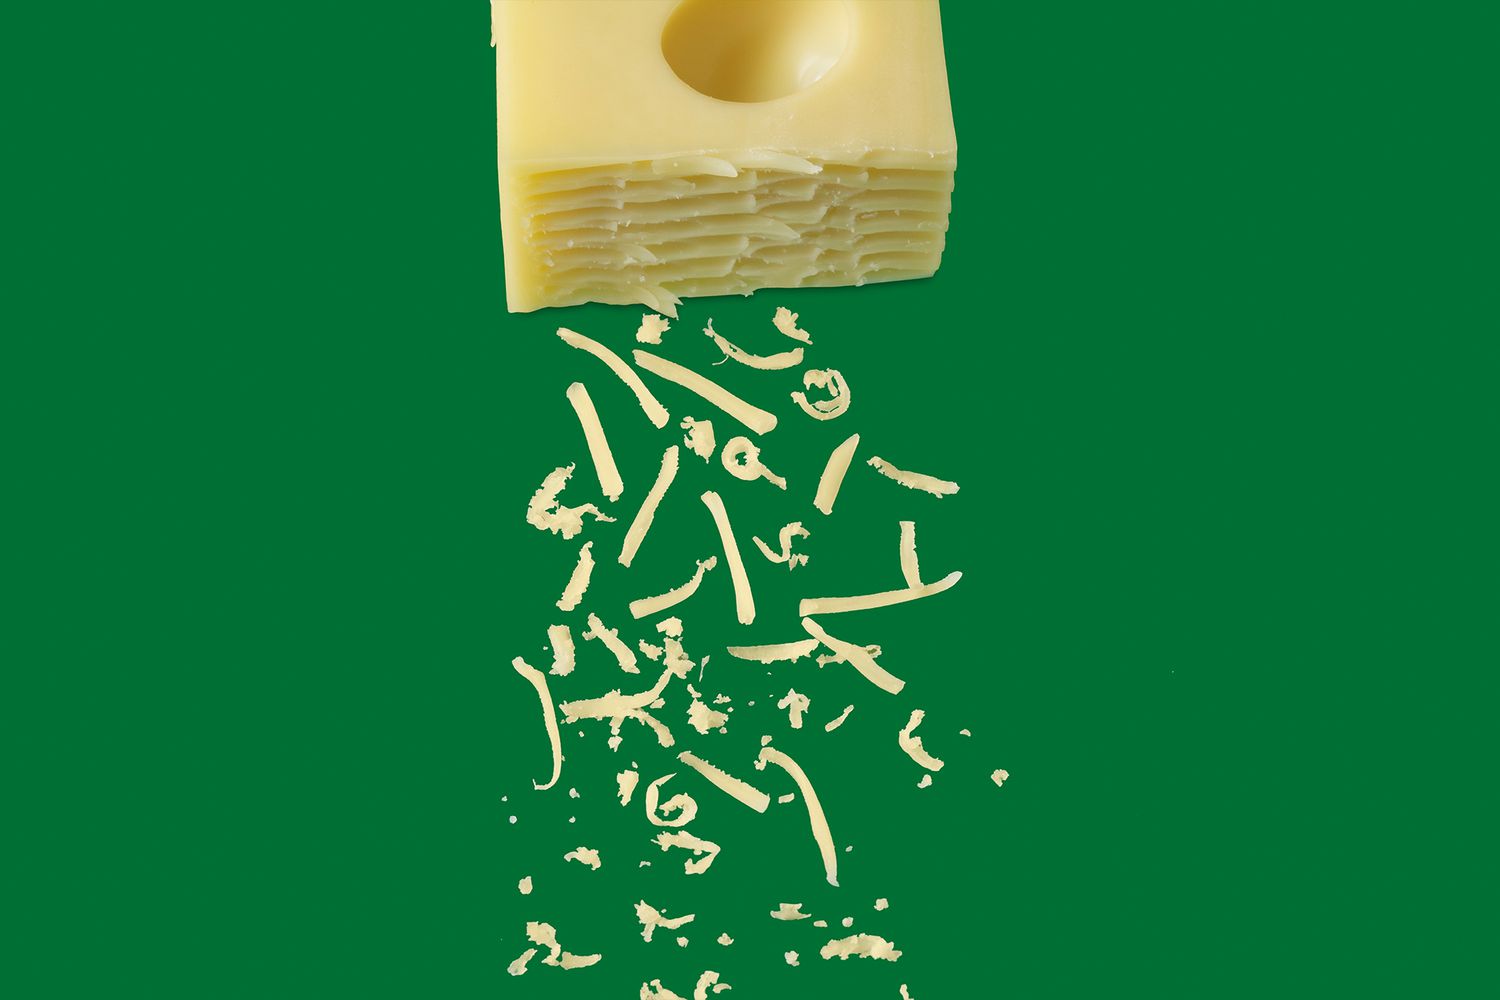 Según una revisión de datos de 2022 publicada en la revista Cardiovascular Research, comer una cantidad apropiada de queso y yogurt como parte del patrón dietético equilibrado puede protegerse de la enfermedad cardíaca. También se ha demostrado que sí. En general, el queso mozzarella, el queso cheddar, el queso suizo y el requesón son el queso más popular, pero si lo disfruta moderadamente, puede hacer que cualquier tipo de queso sea parte de la comida.